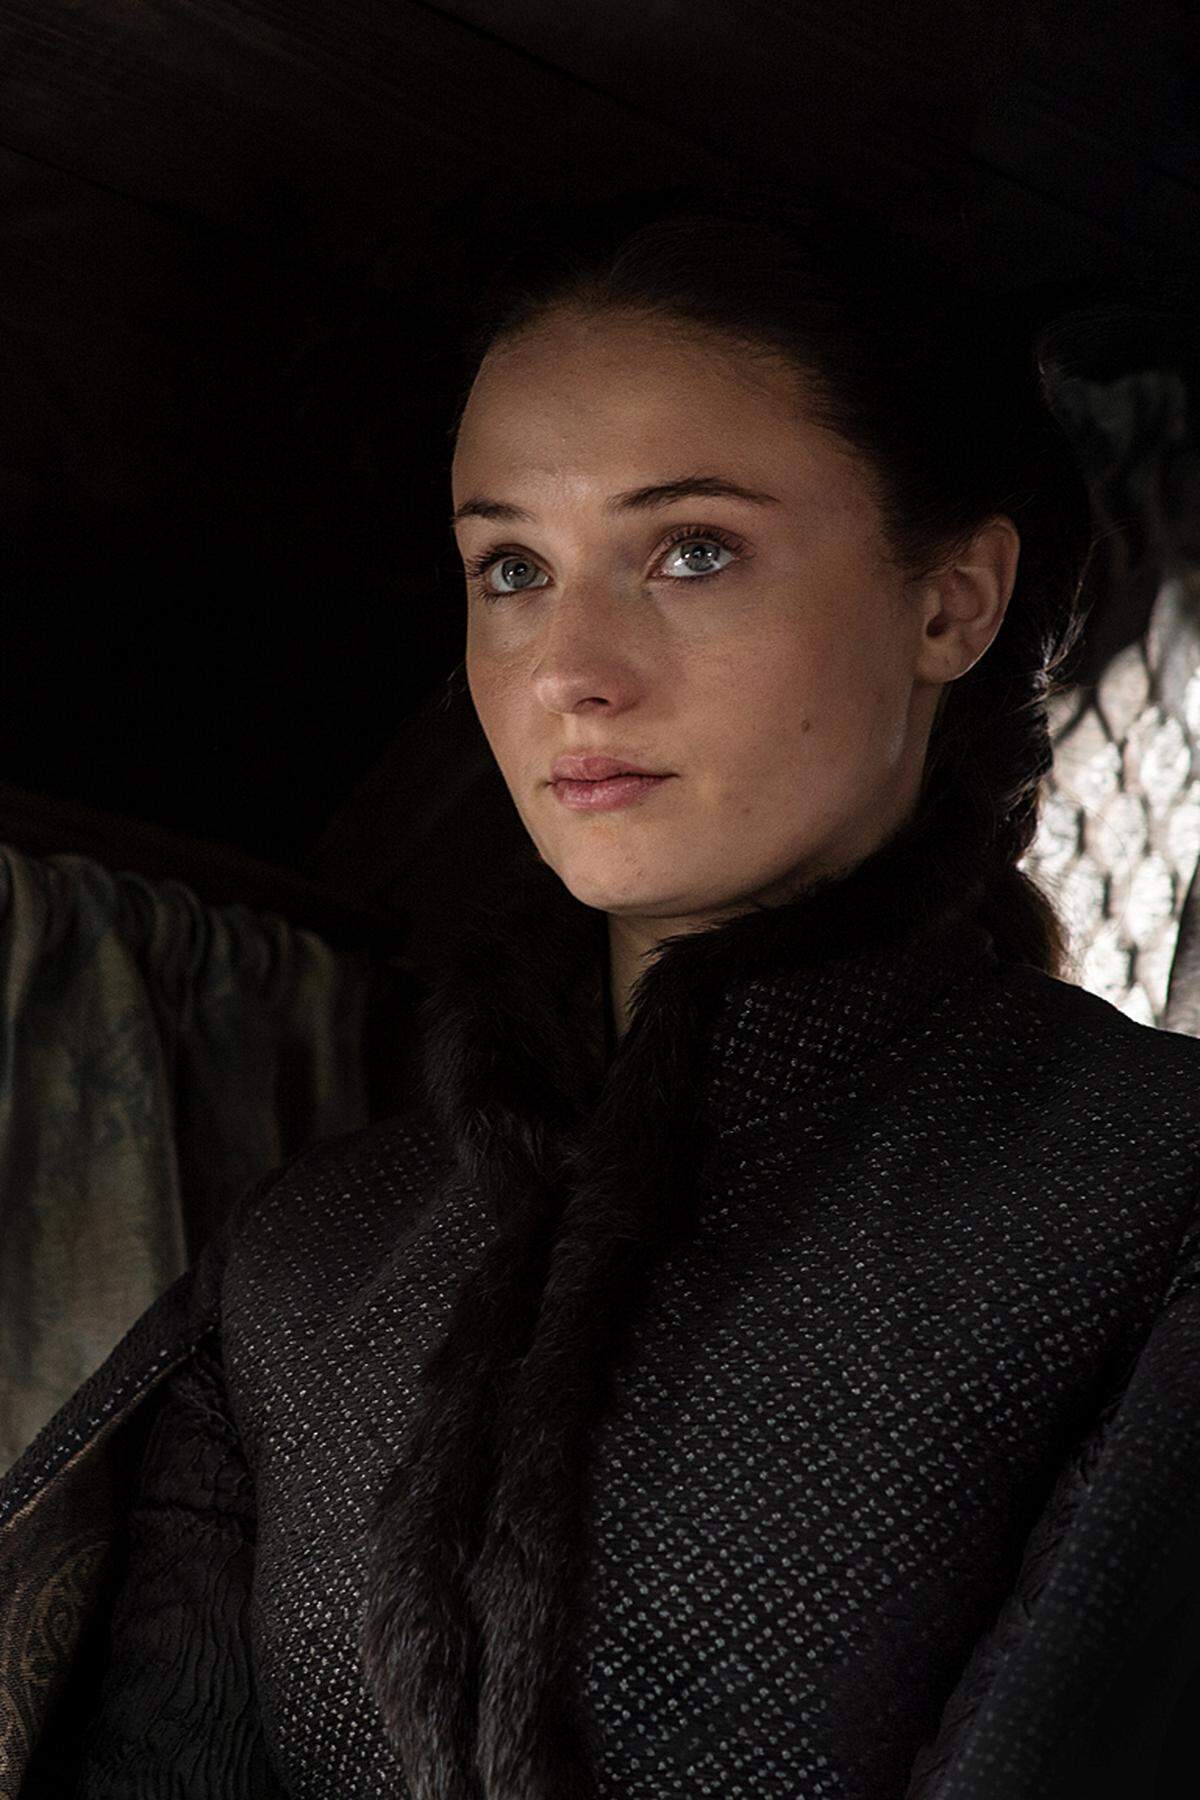 Die älteste Tochter von Ned und Catelyn Stark ist eine echte Lady. Sie war die Verlobte des Teenagerkönigs Joffrey, der ließ sie aber wegen Margaery Tyrell links liegen.  Daraufhin wurde sie mit Tyrion Lannister verheiratet (der die Ehe nie vollzog) - und flüchtete mit Petyr "Littlefinger" Baelish zur ihrer Tante Lysa Arryn in deren luftige Burg in die Gebirgswelt.